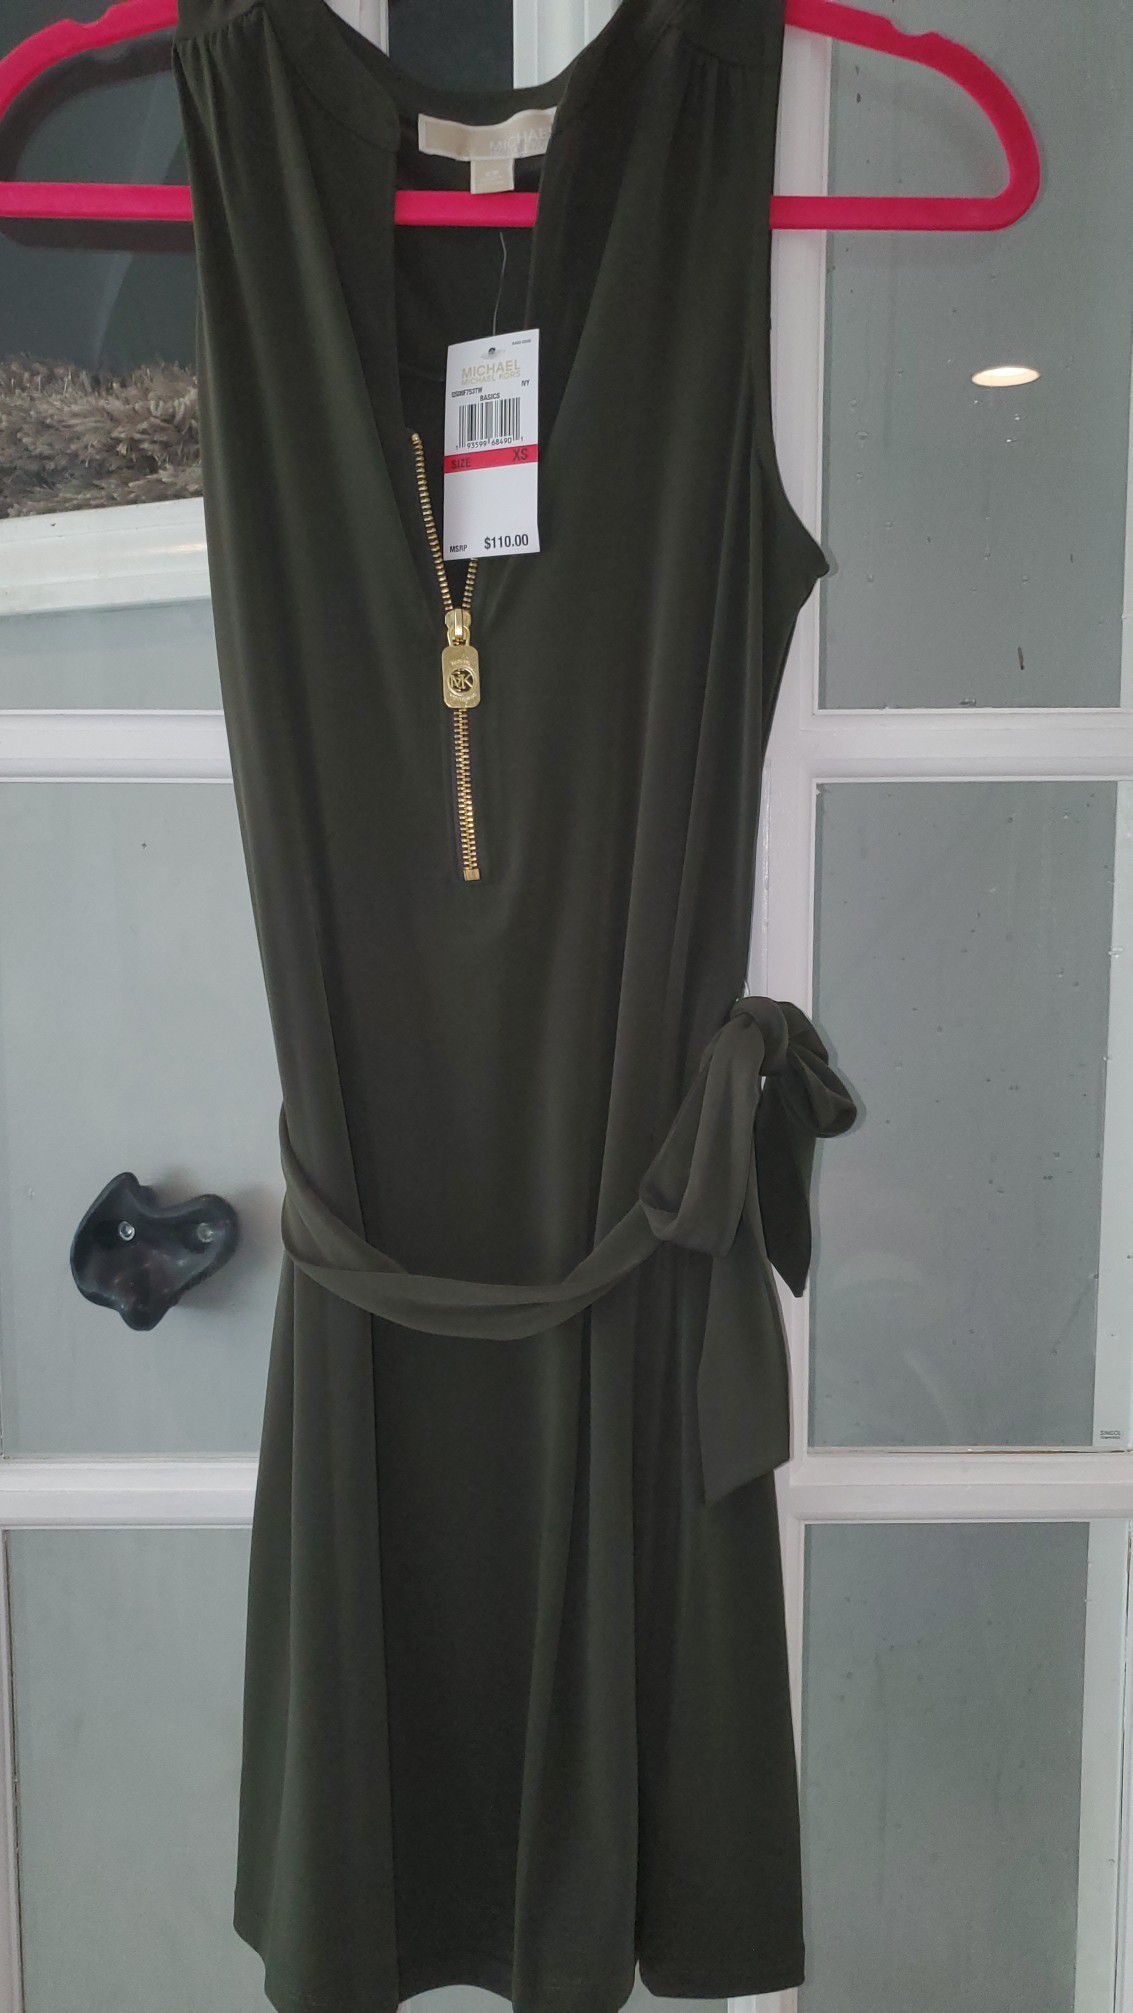 Michael Kors xs dress brand new w tags $35